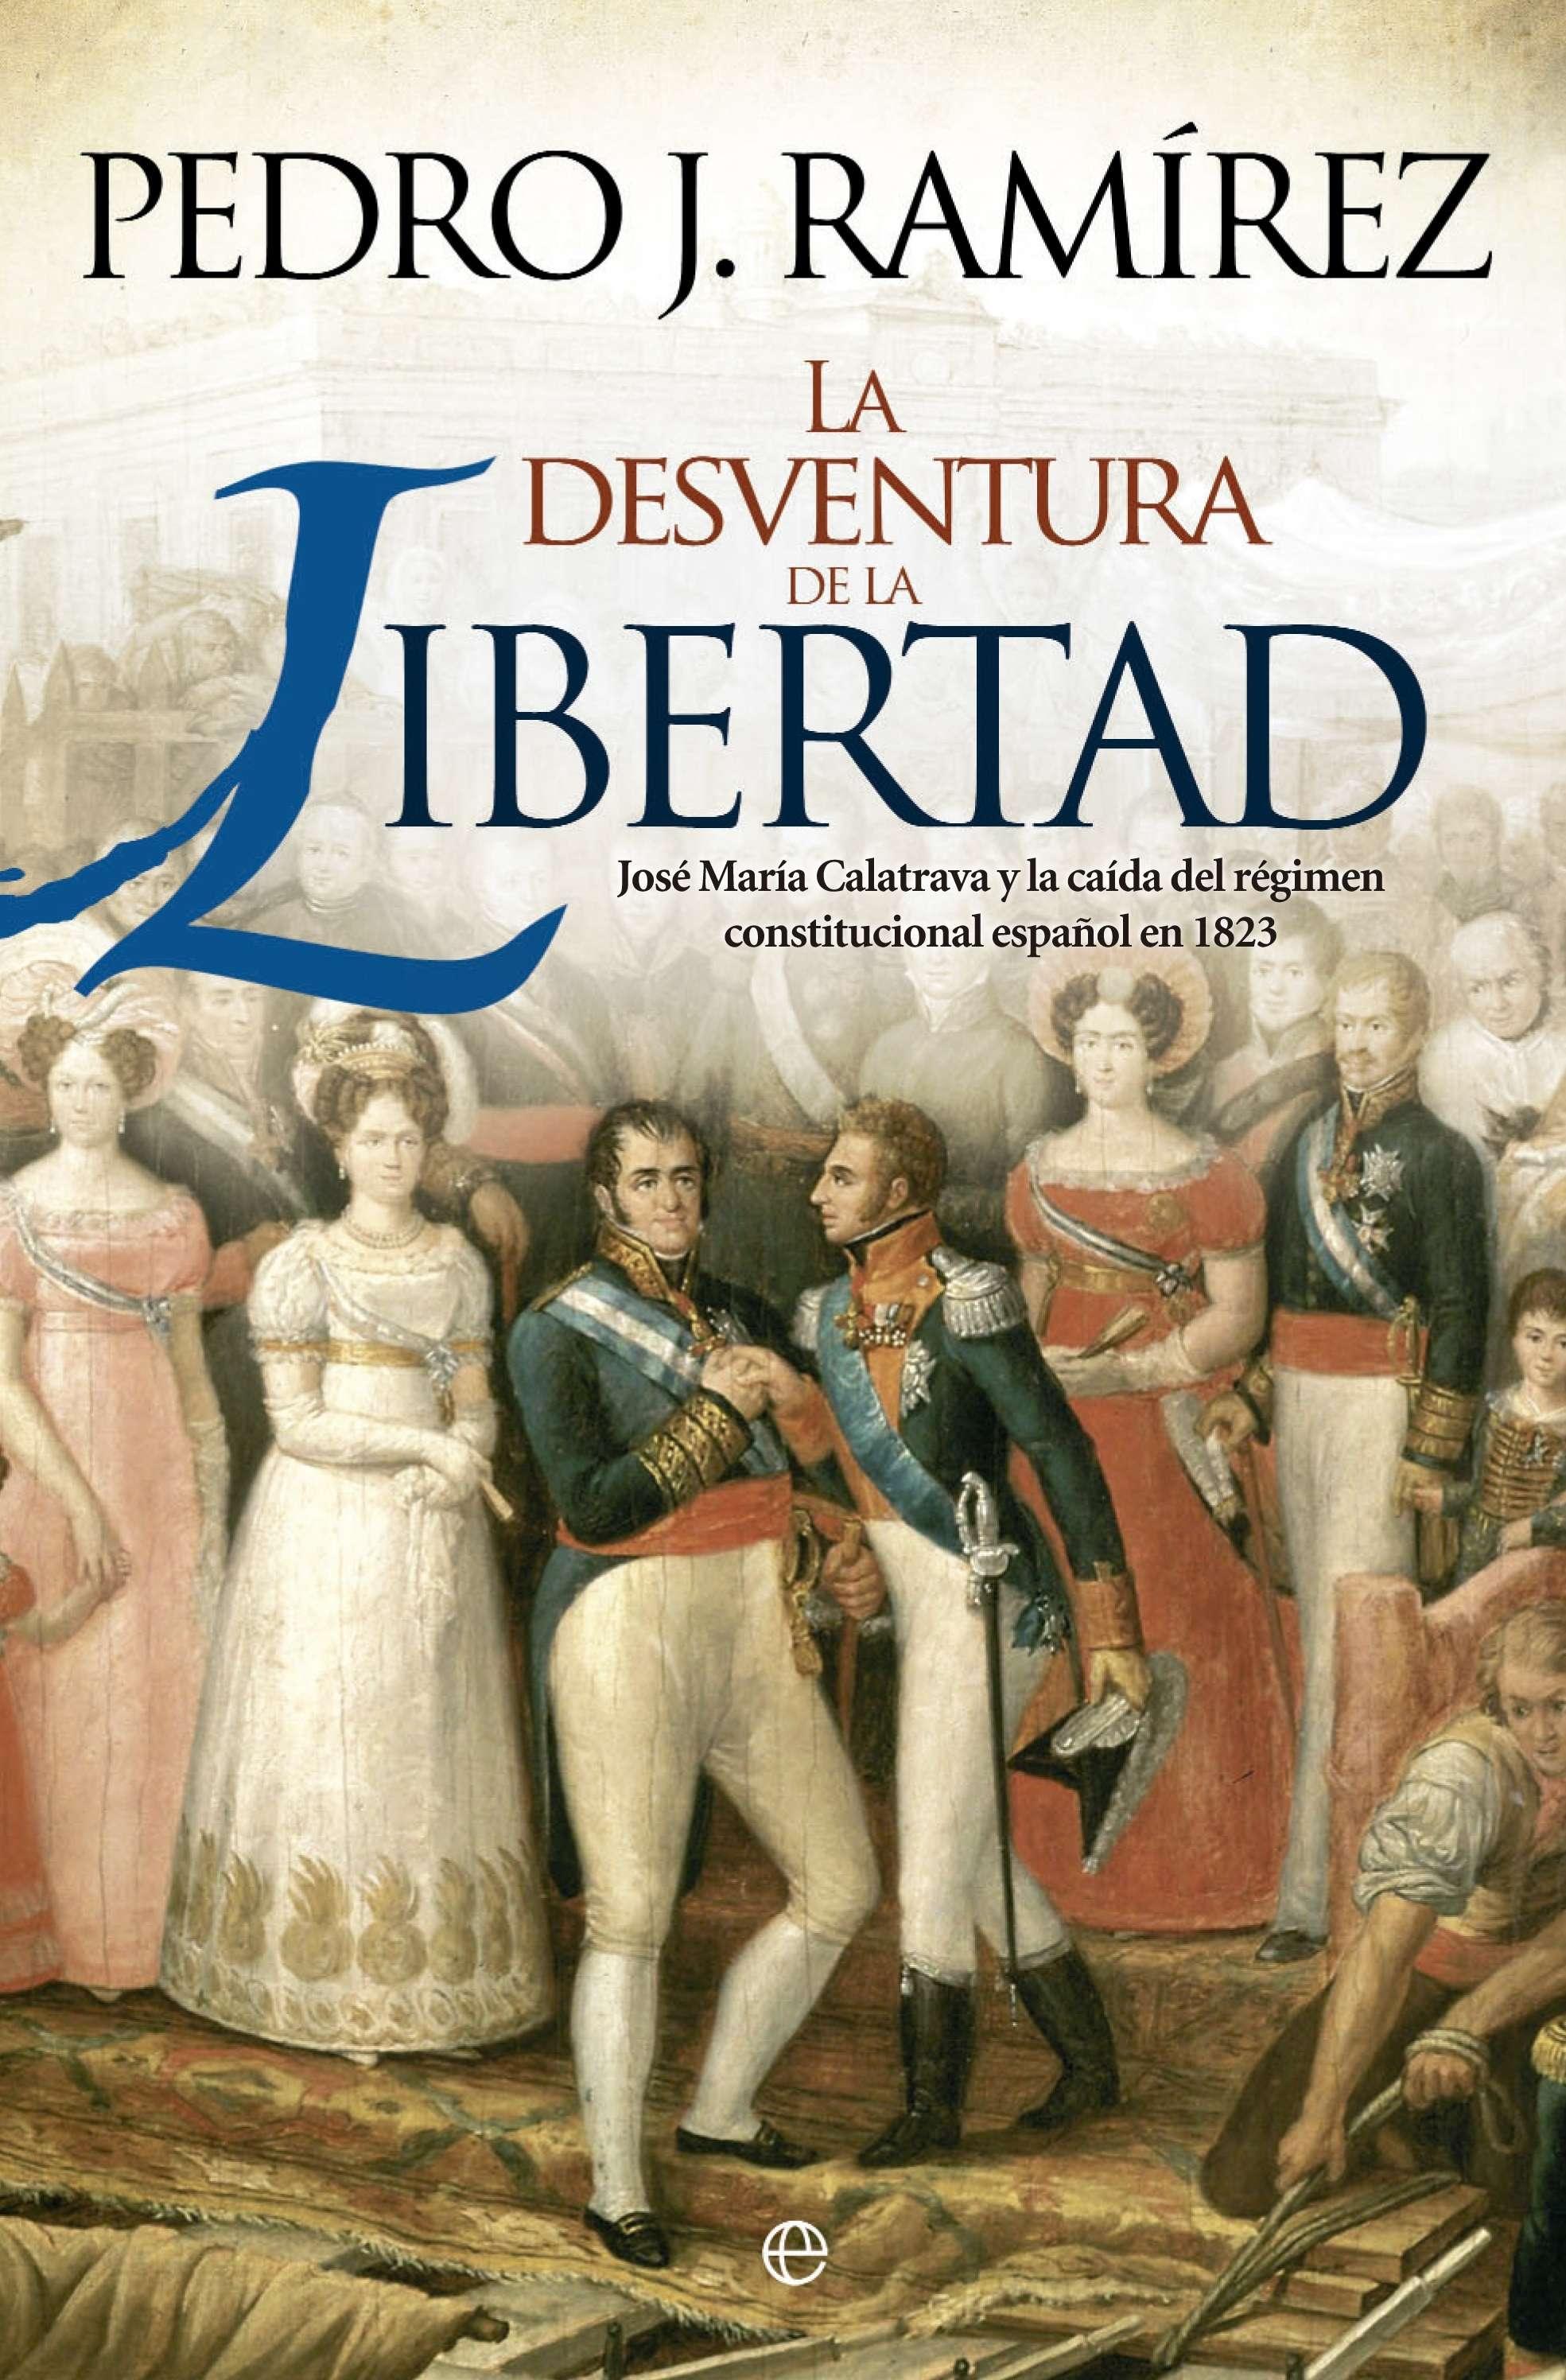 La desventura de la libertad "José María Calatrava y la caída del régimen constitucional español en 1823". 